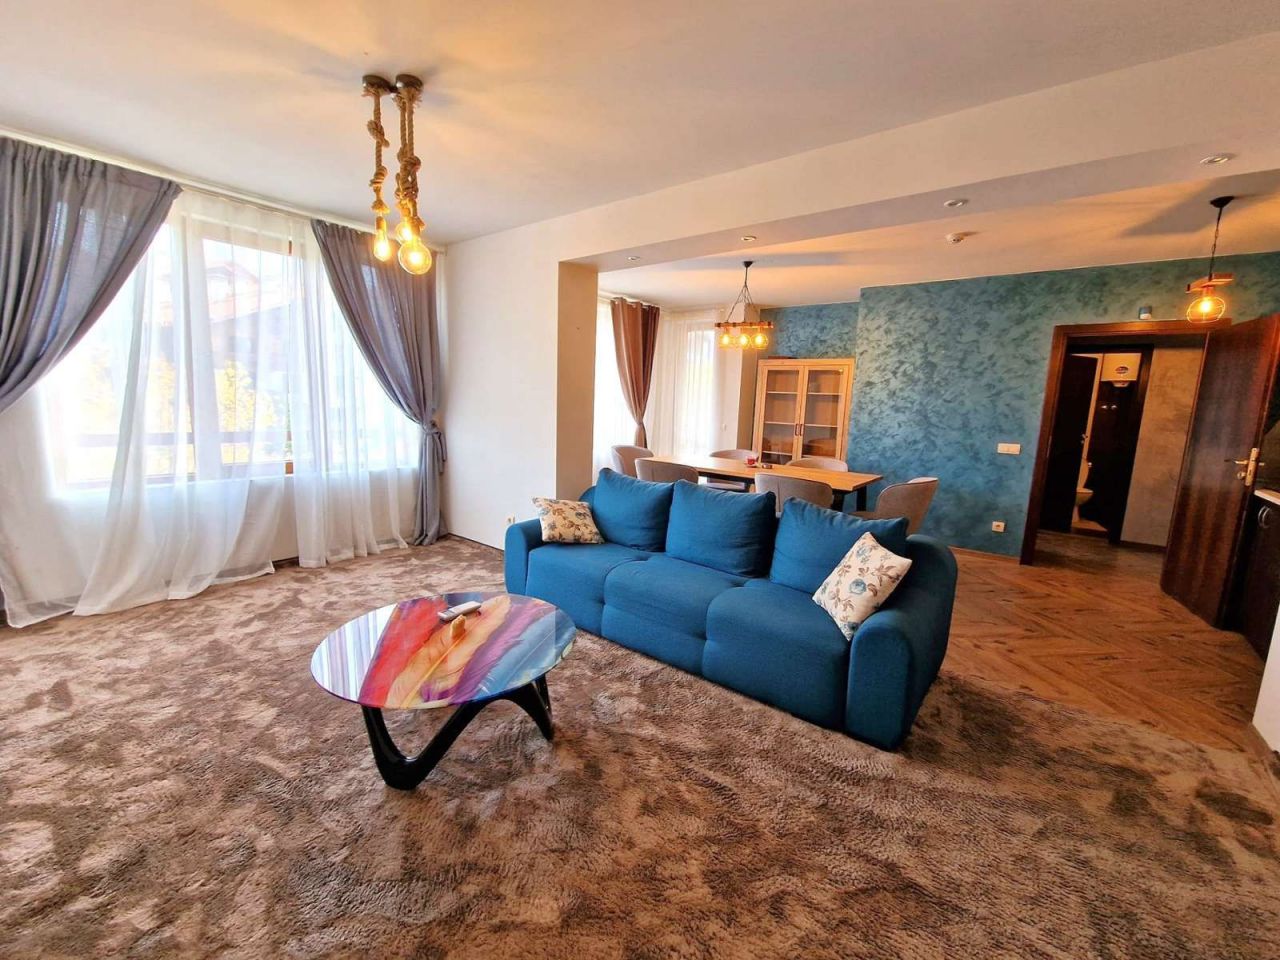 Apartment in Bansko, Bulgaria, 110 sq.m - picture 1